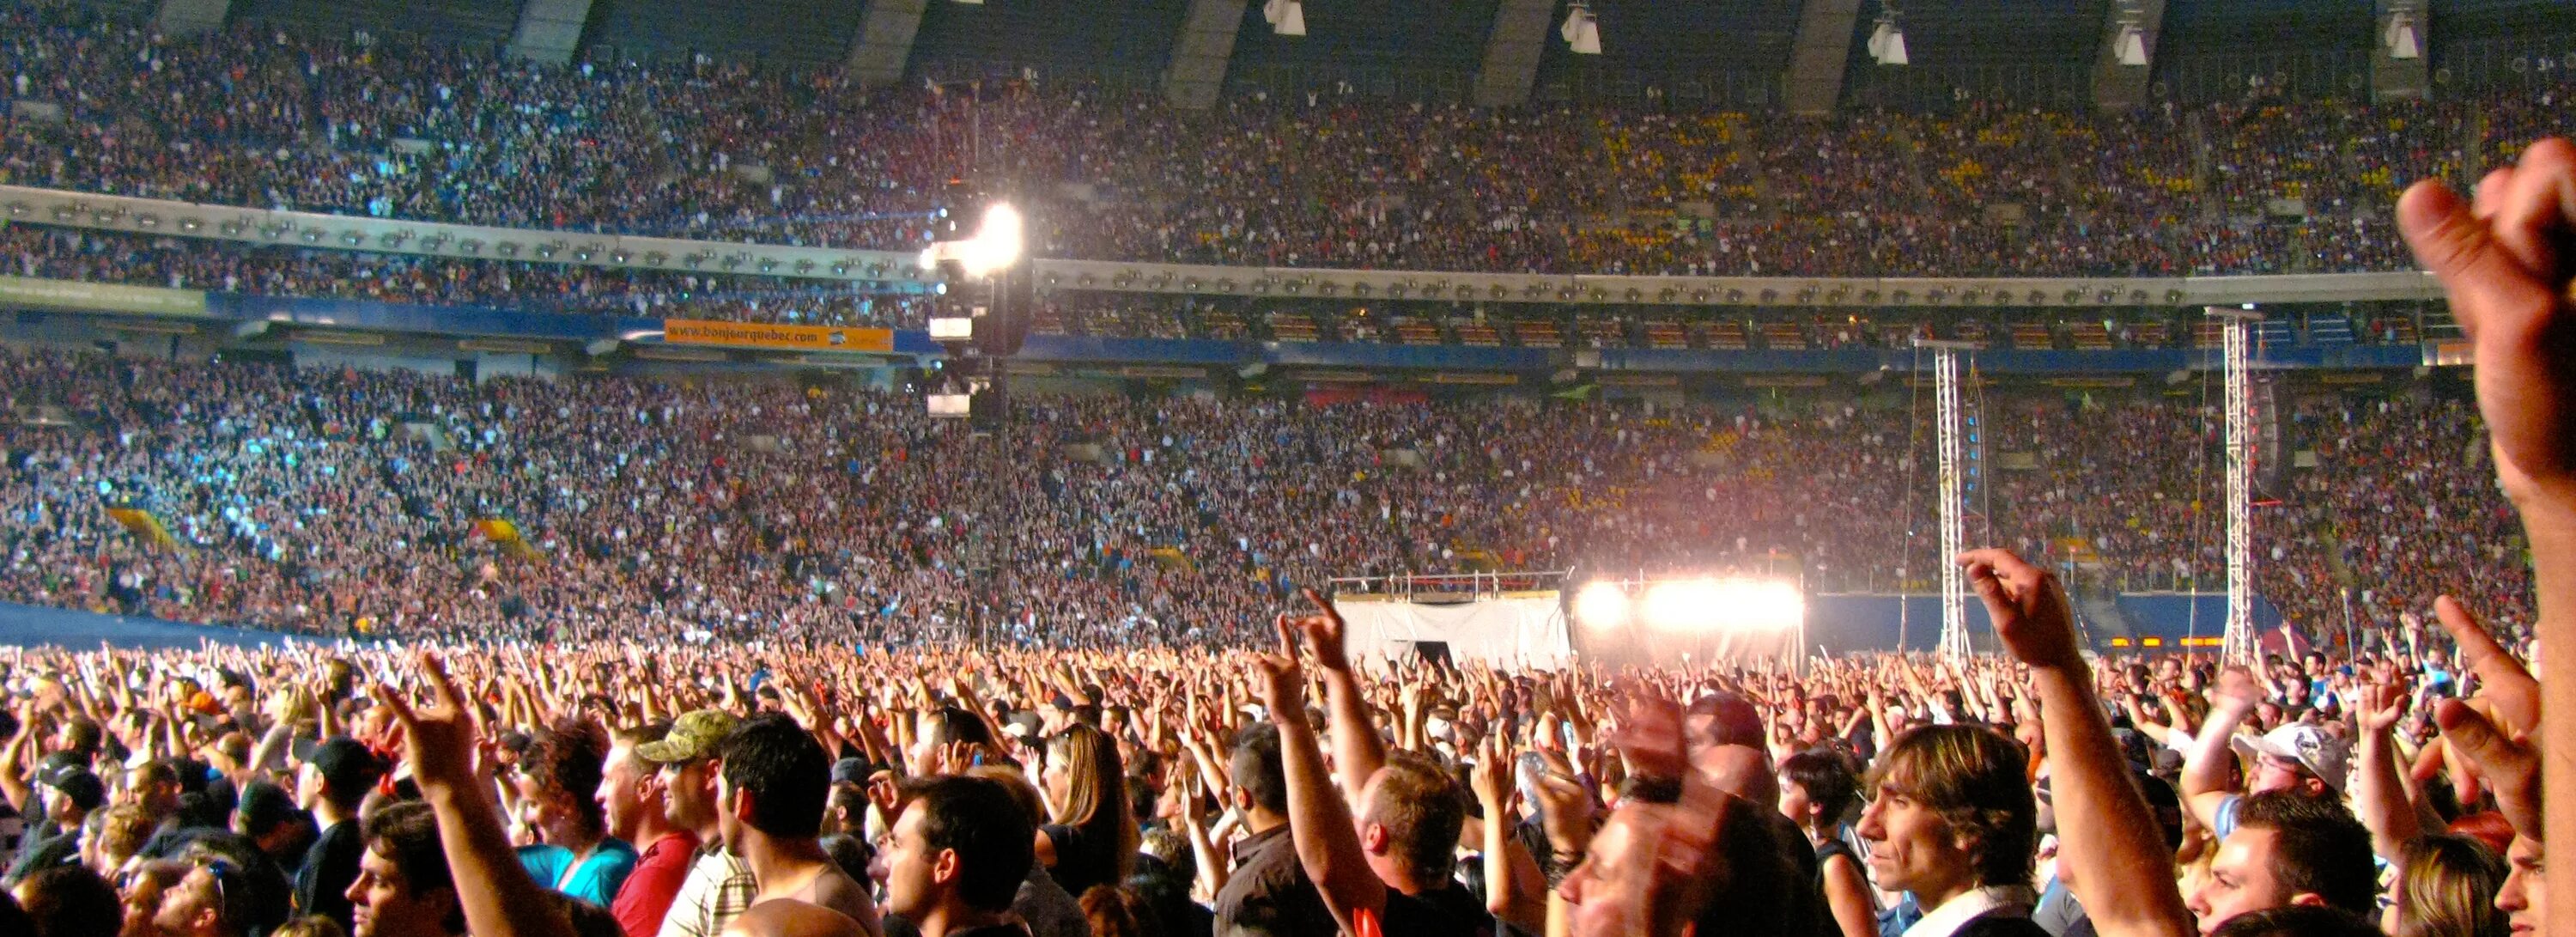 AC DC концерт 2009. АС ДС концерт стадион. Концерт AC DC 2009 River. Толпа на стадионе.